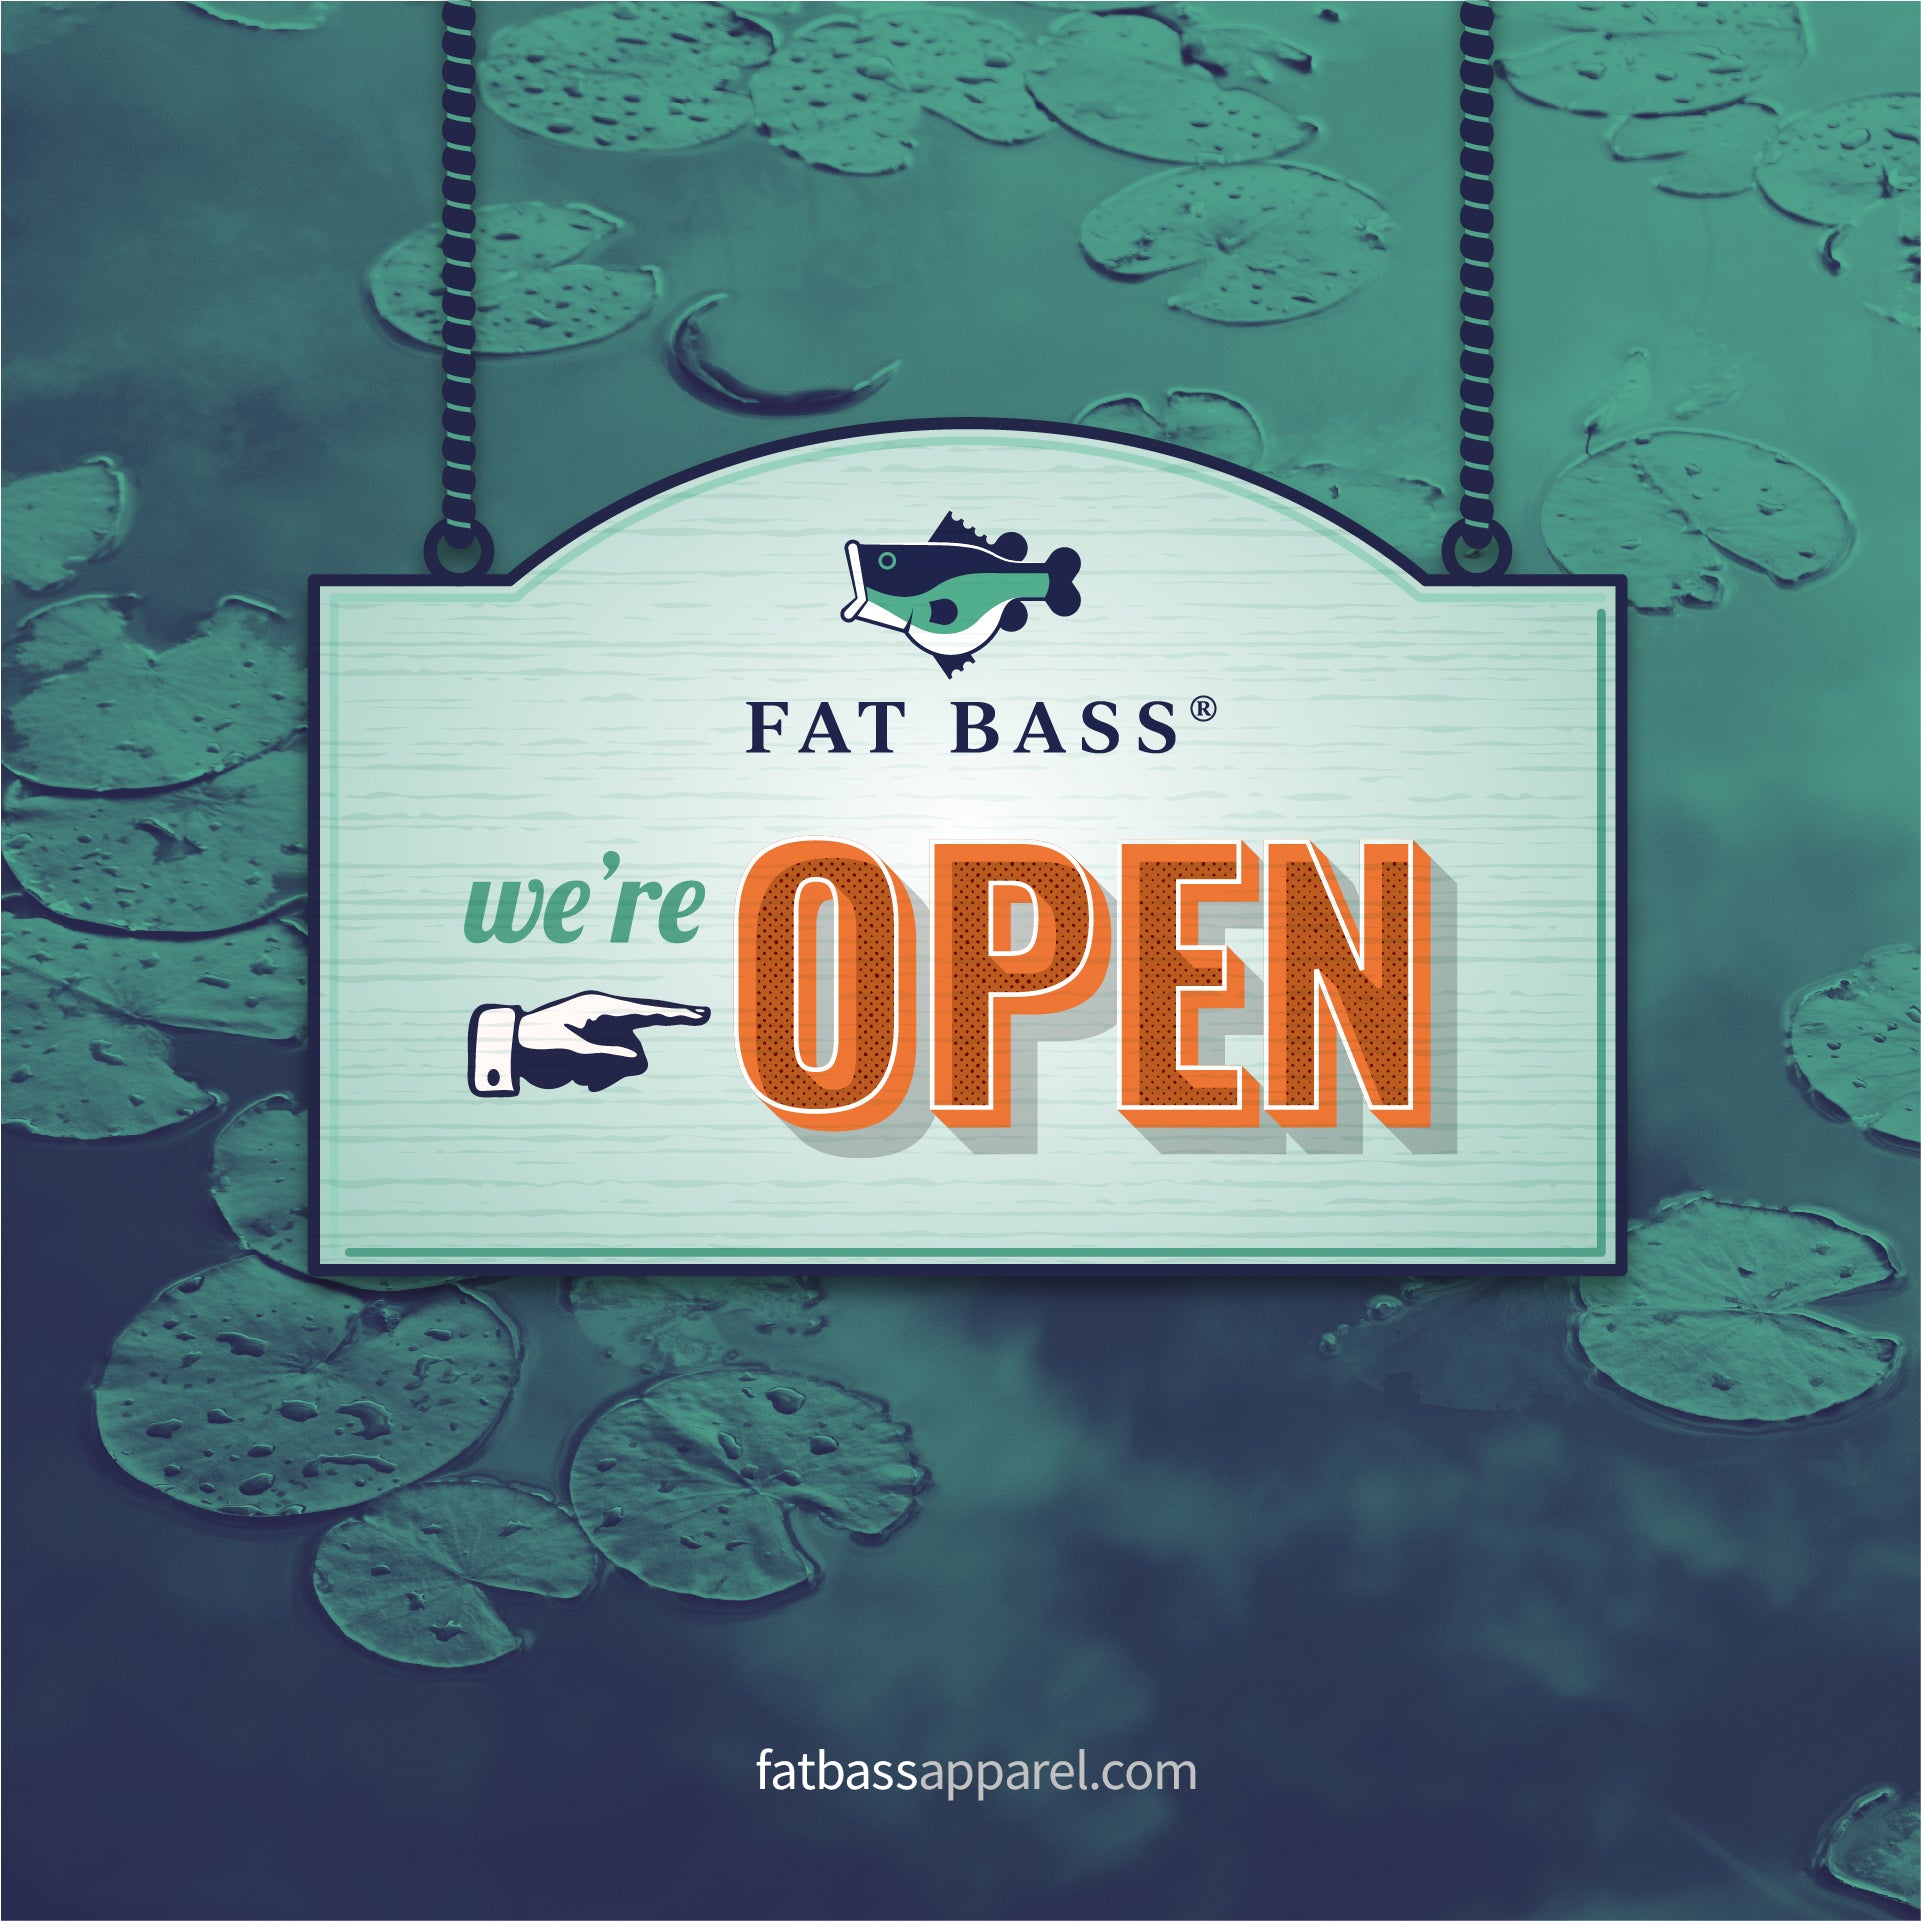 FAT BASS - We're OPEN